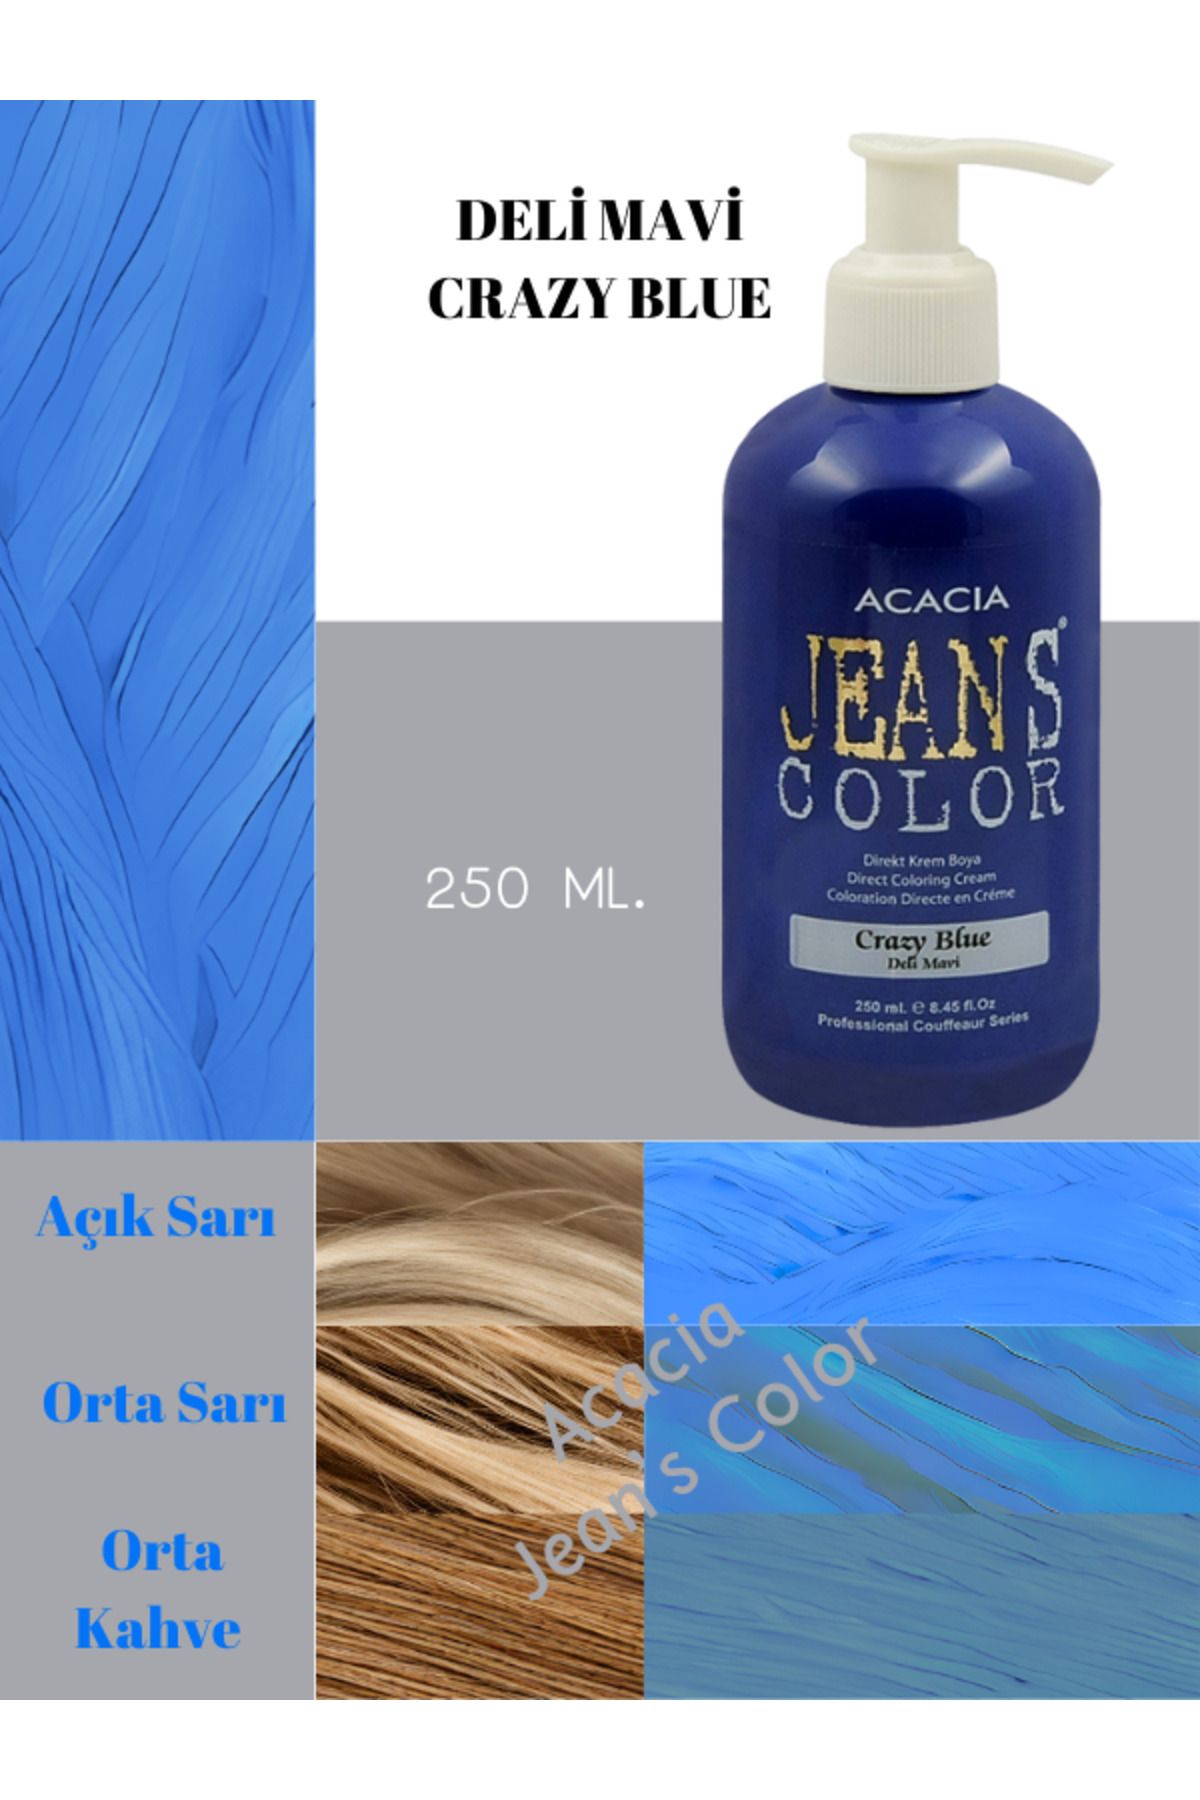 jeans color Amonyaksız Renkli Saç Boyası Deli Mavi 250ml. Kokusuz Su Bazlı Crazy Blue Hair Dye